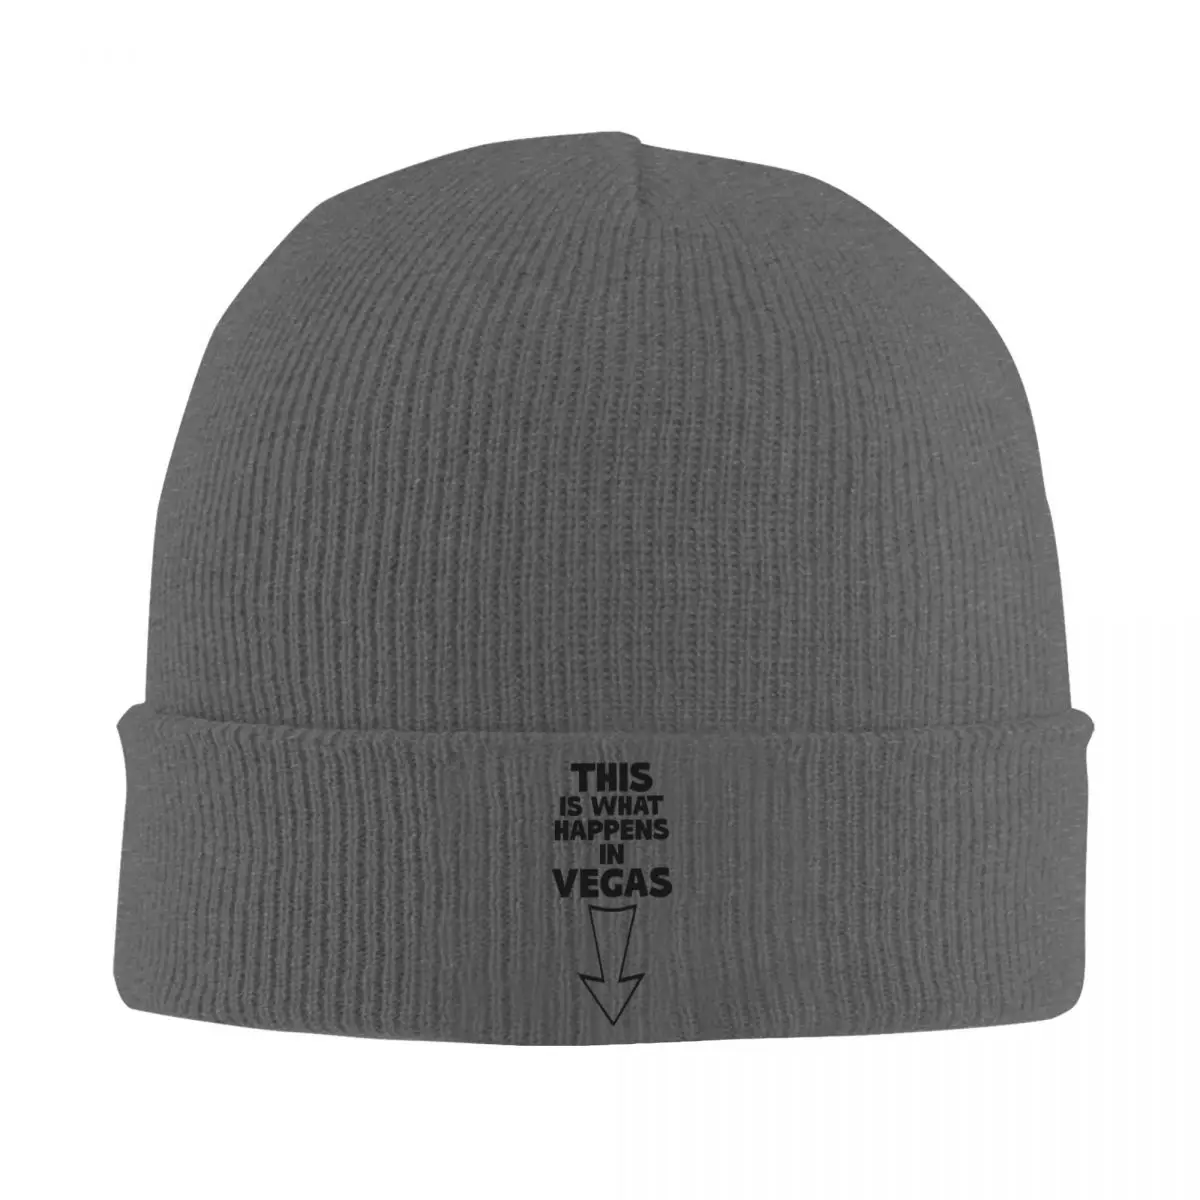 

Это произойдет в Вегасе, Классическая вязаная шапка, 100% акрил, легкий подарок на день рождения